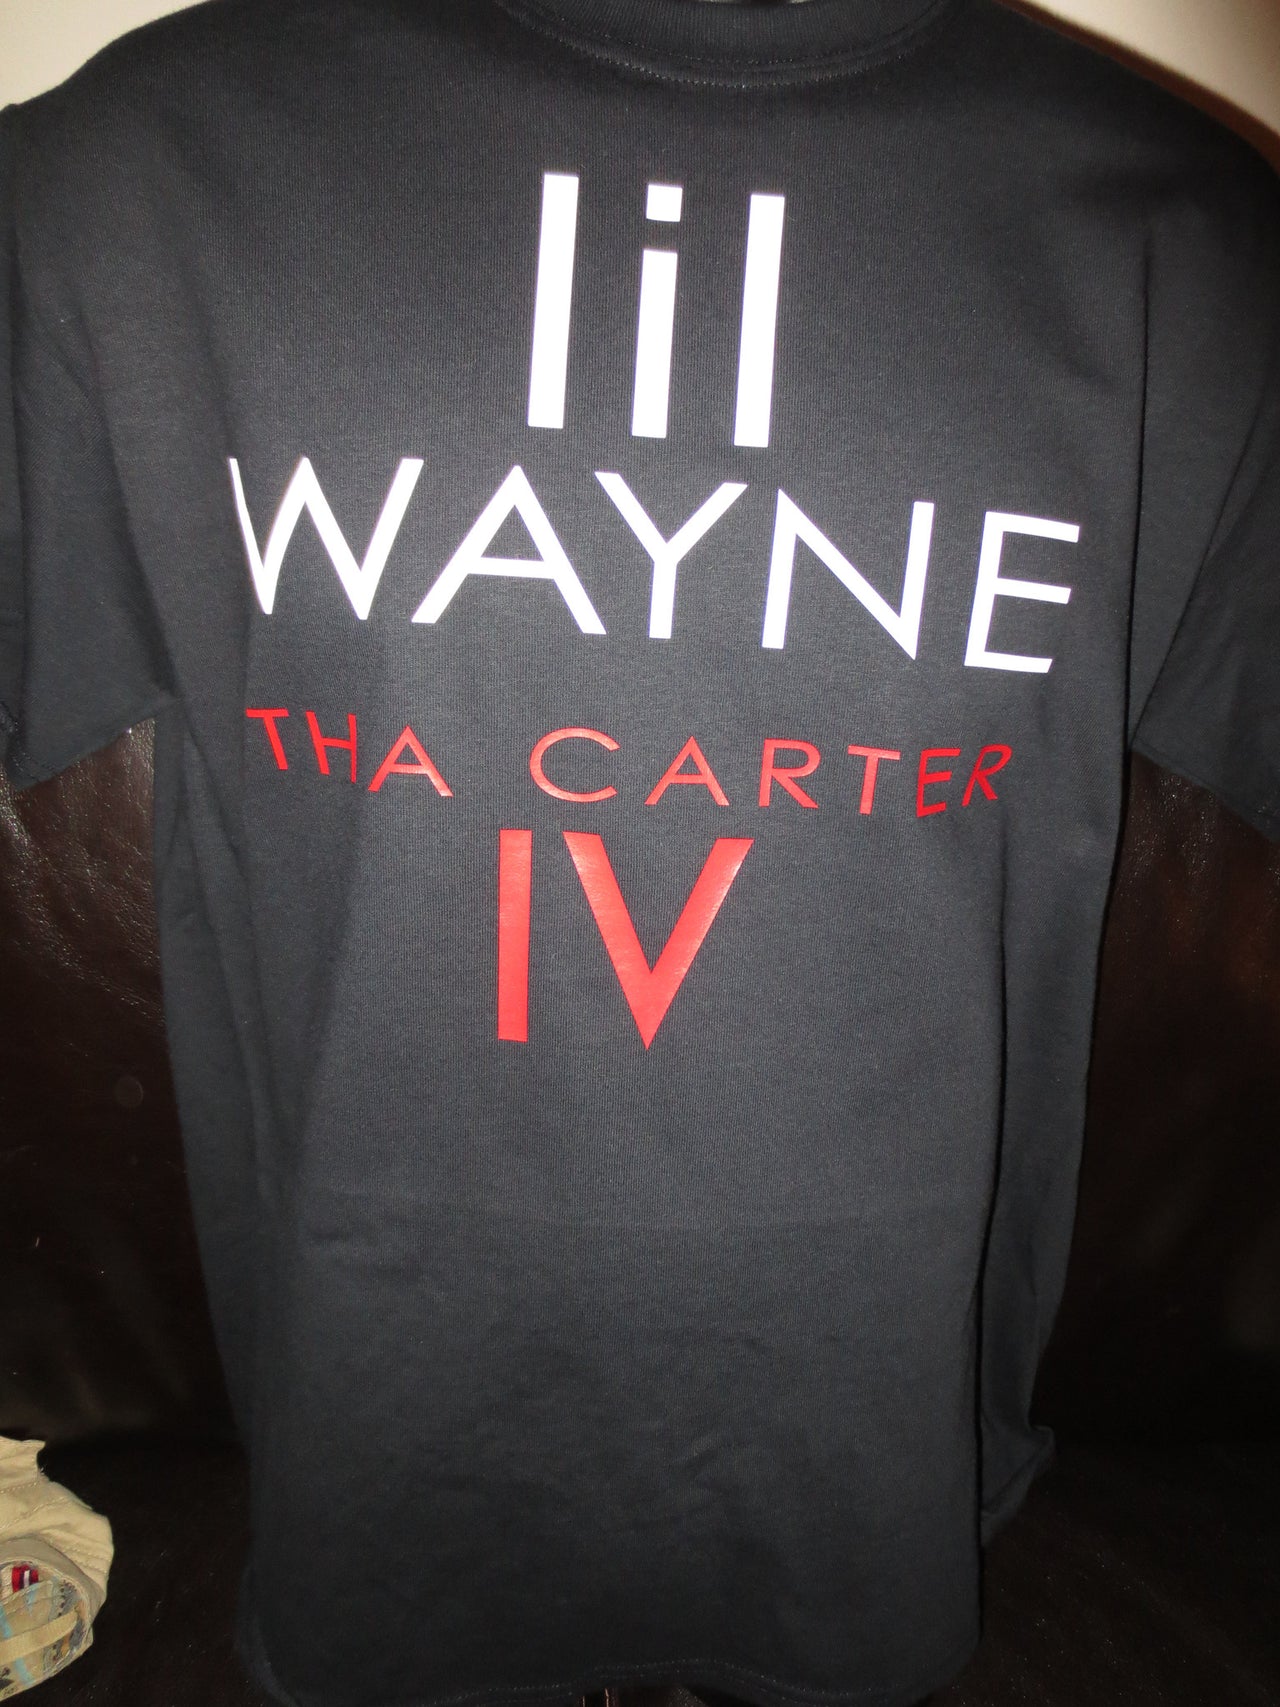 Lil Wayne Tha Carter 4 Tshirt - TshirtNow.net - 5